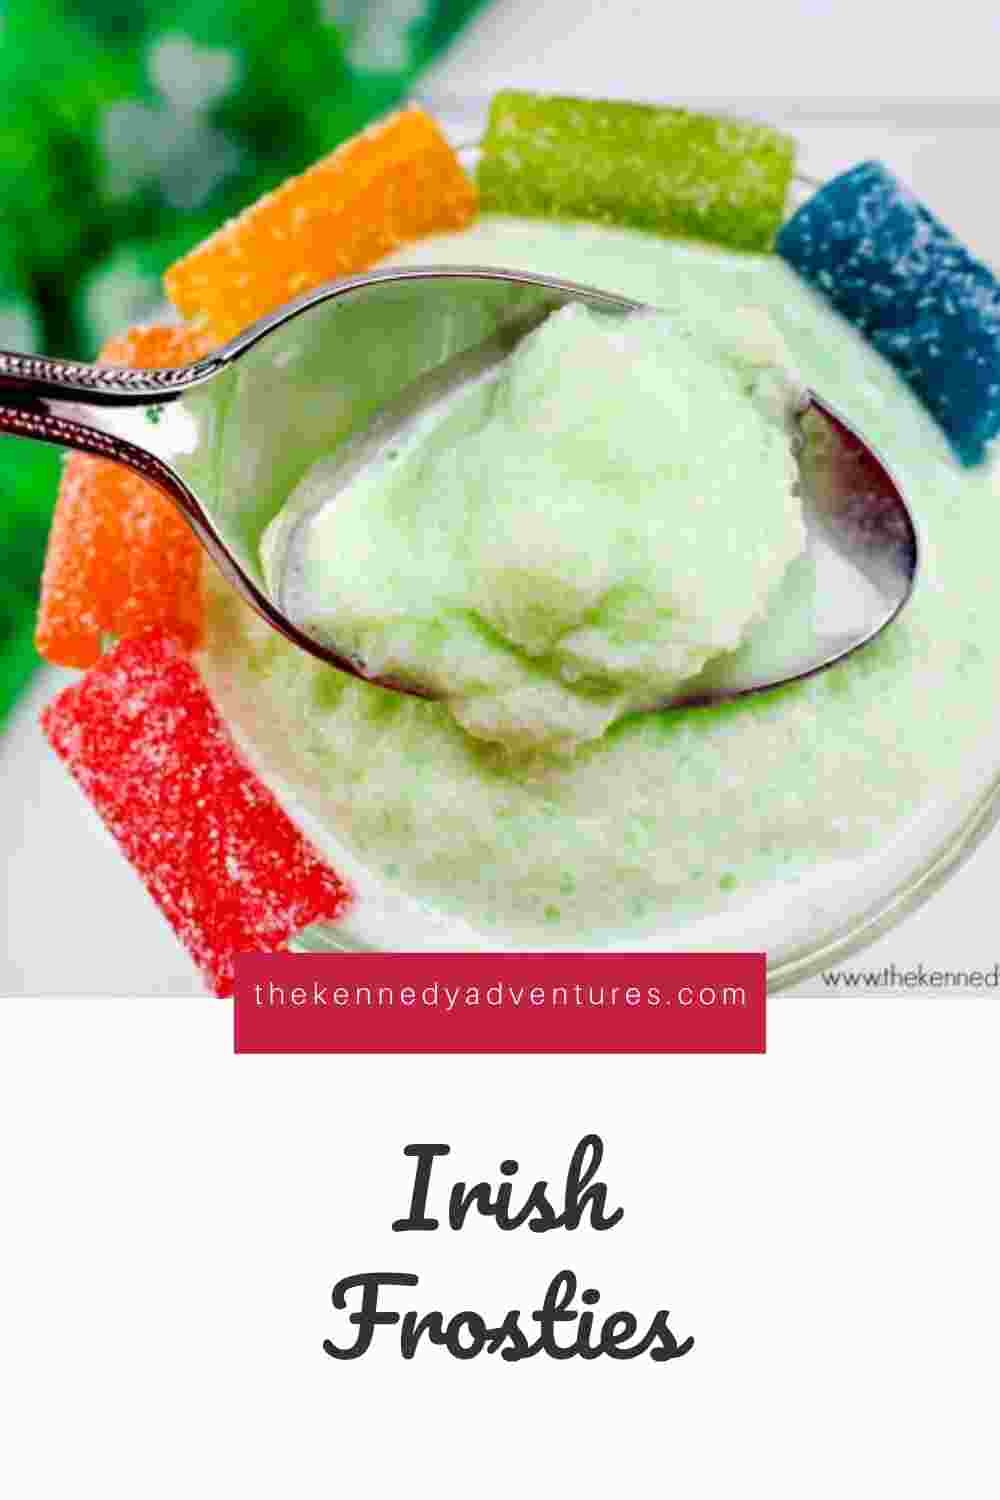 Irish Frosty Treats for St Patrick's Day